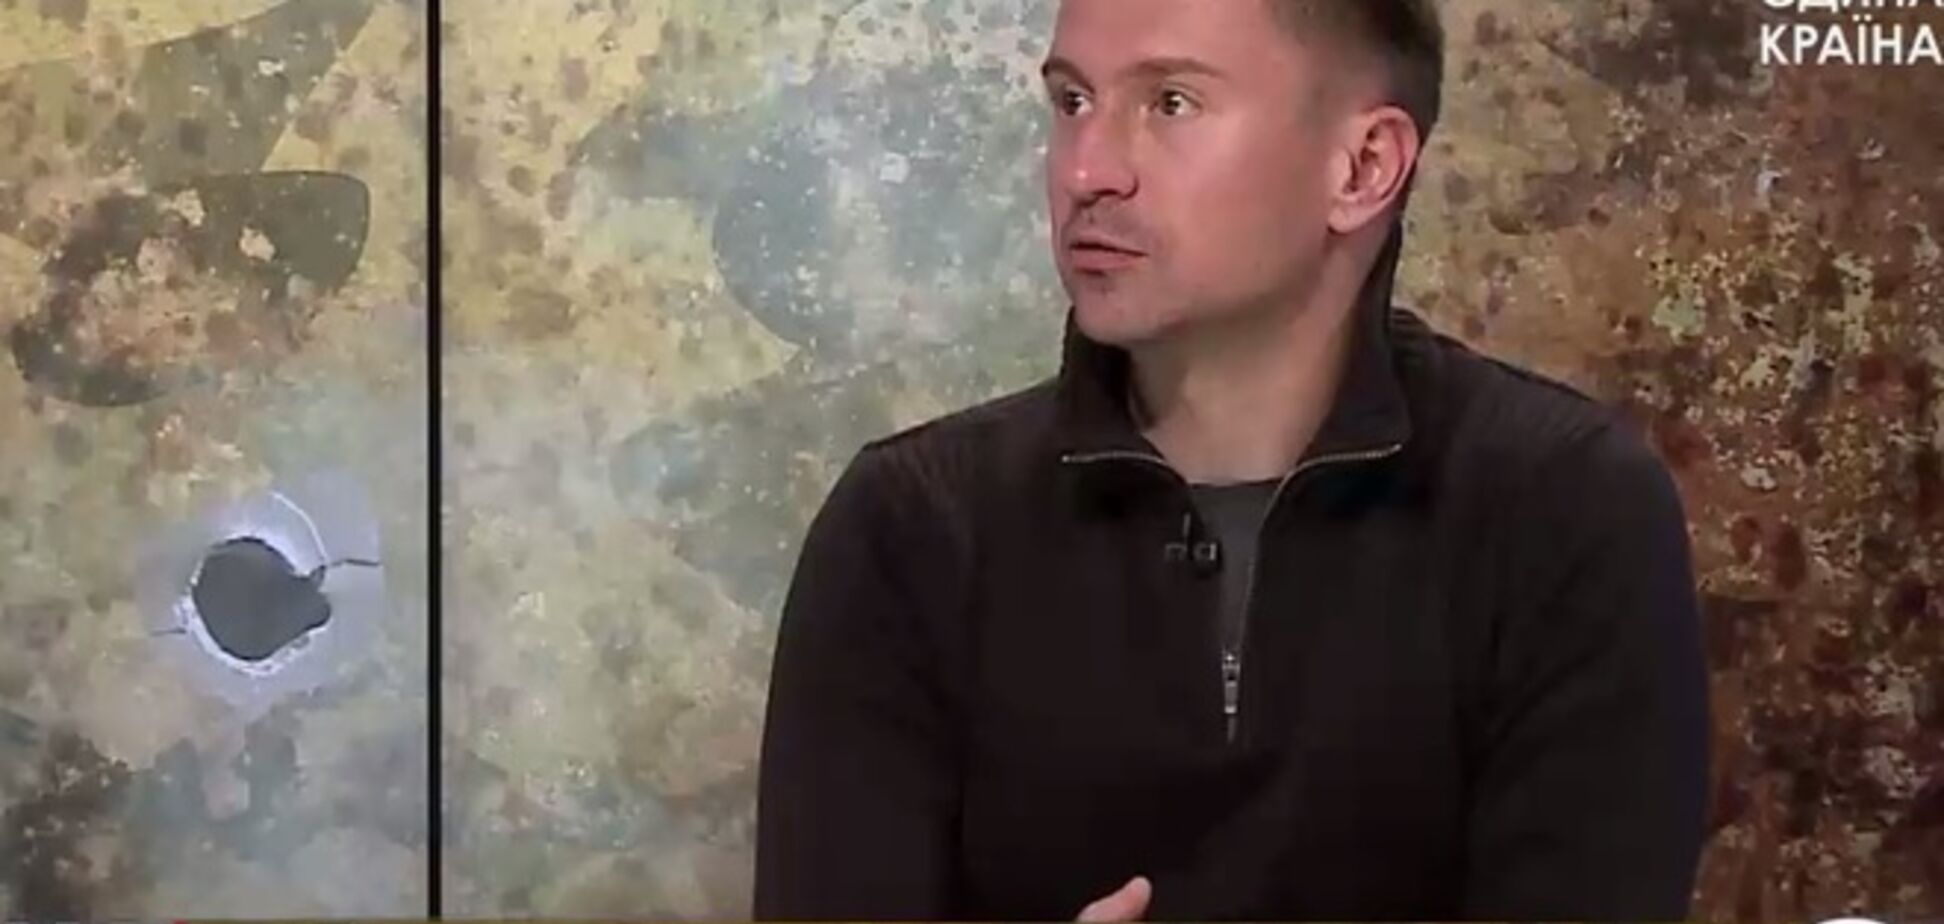 Данилюк на ТВ рассказал подробности ликвидации Безлера. В СБУ и СНБО об этом ничего не знают